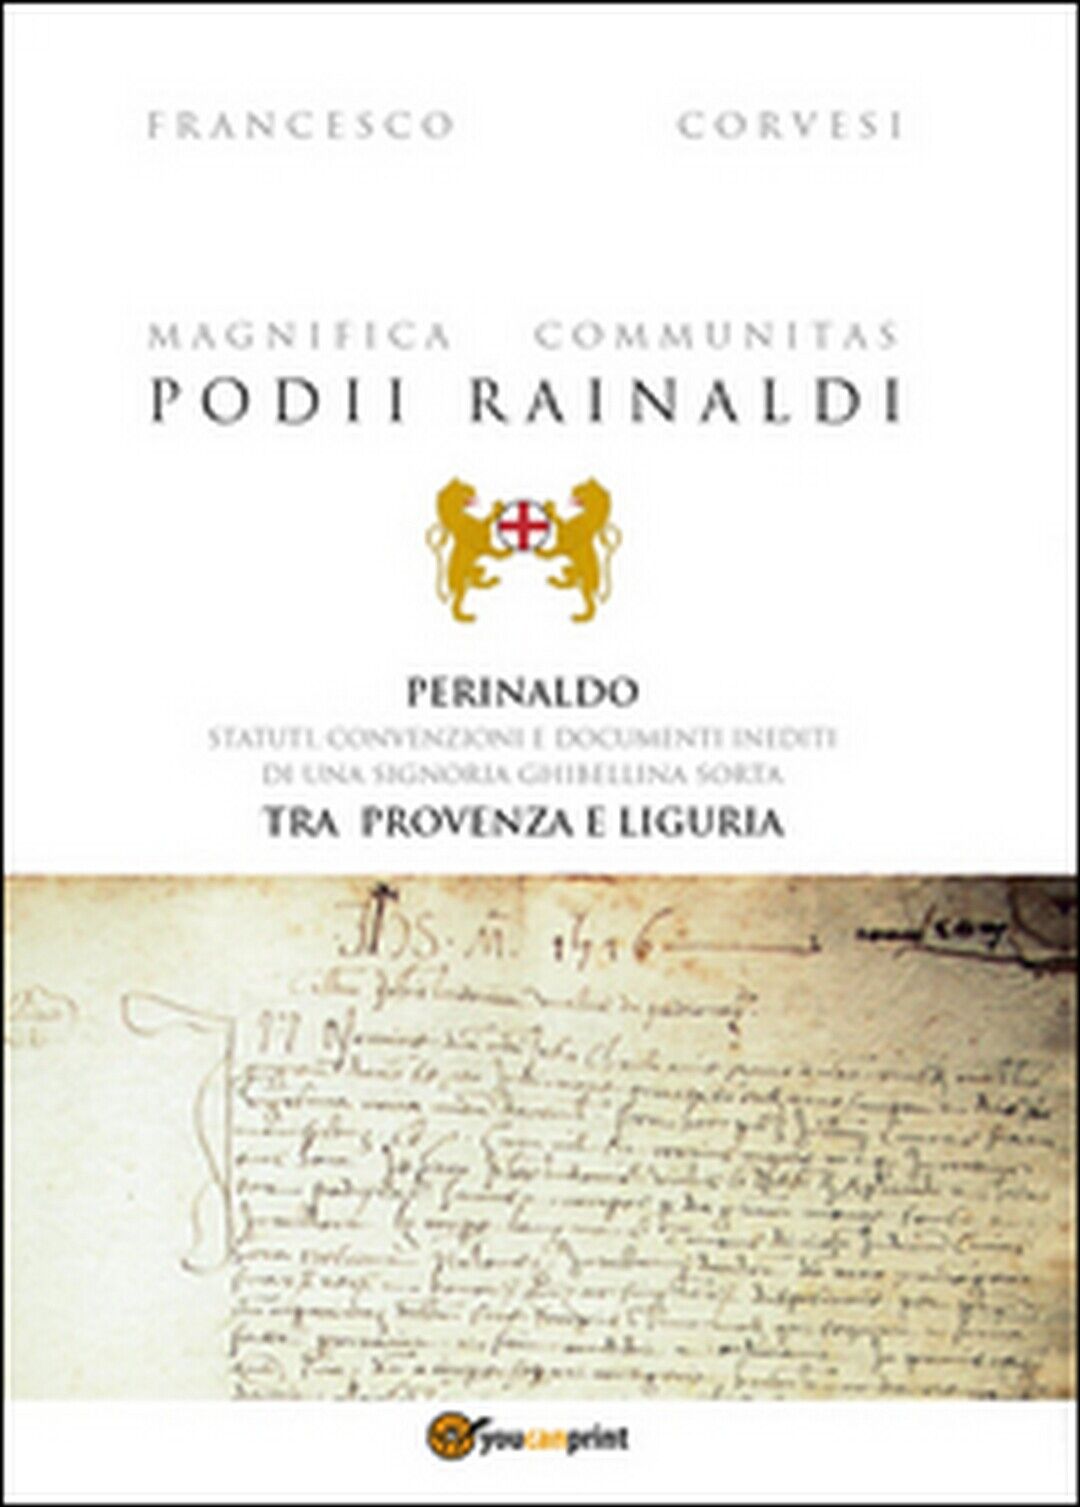 Magnifica Communitas Podii Rainaldi. Perinaldo: statuti, convenzioni e documenti